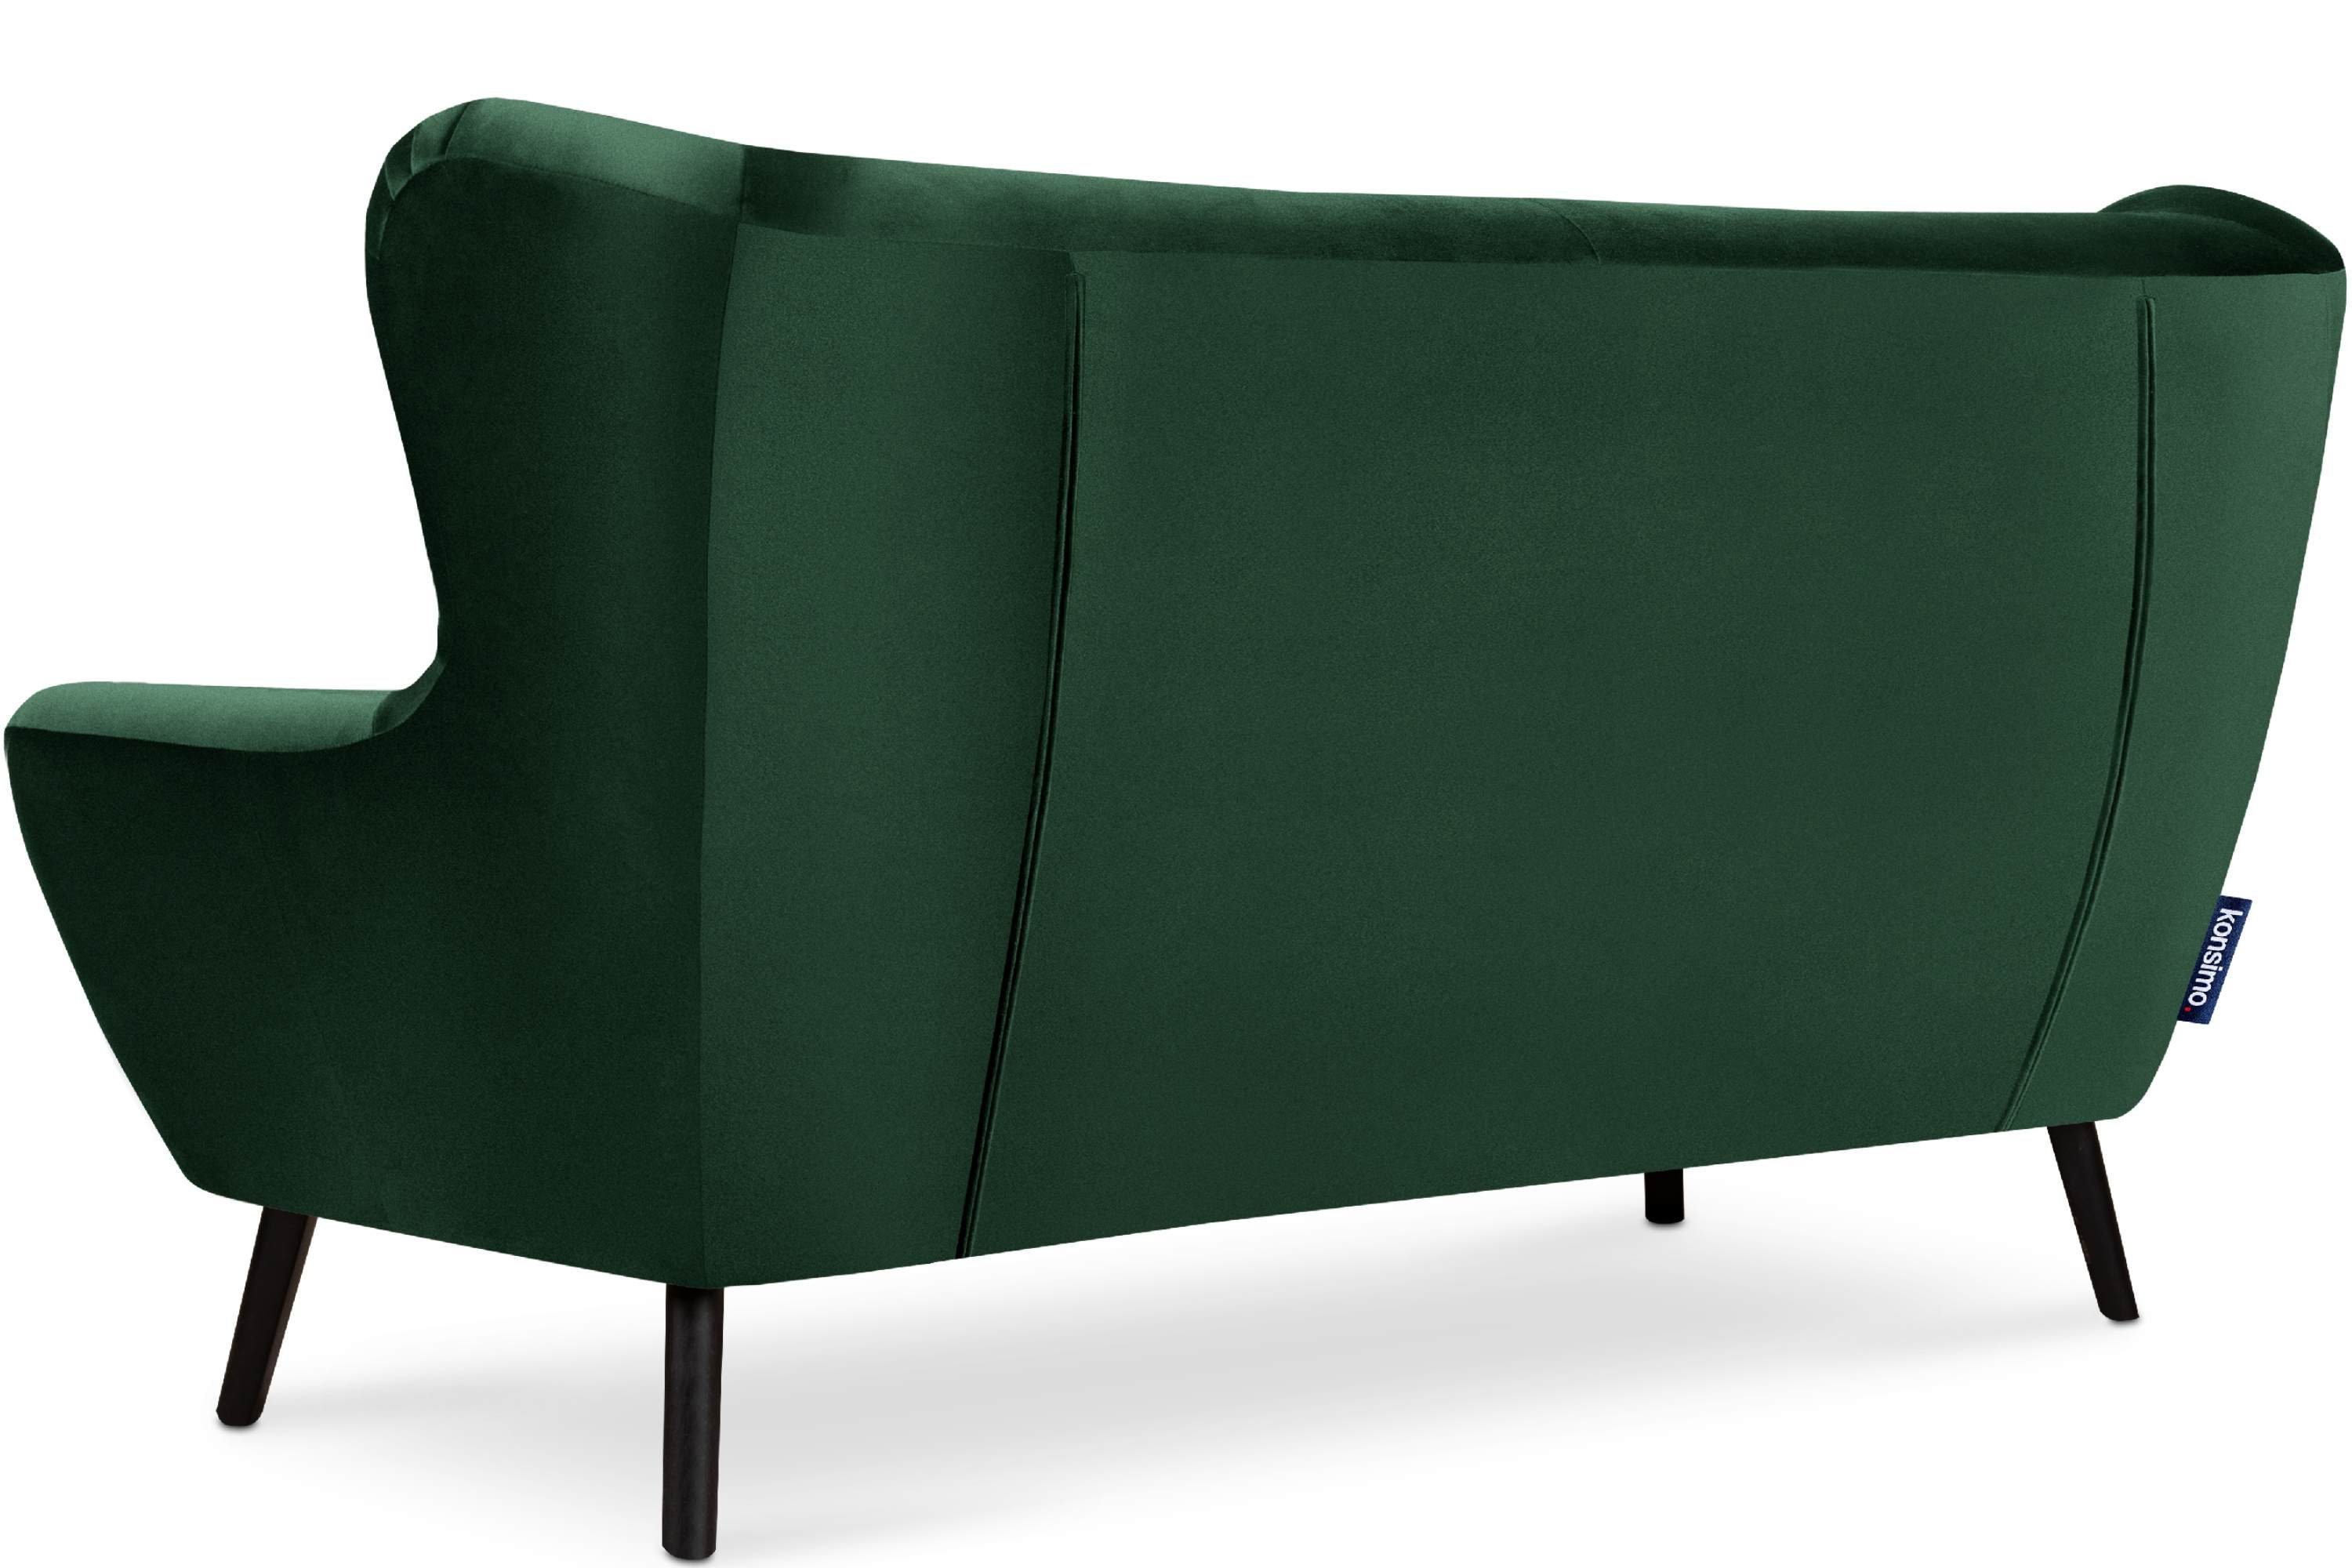 bequemer Sitz Oberstoff, wasserabweisender Schaumstoff dunkelgrün Sofa 3 dunkelgrün im Sitzer, Konsimo MIRO | Sofa